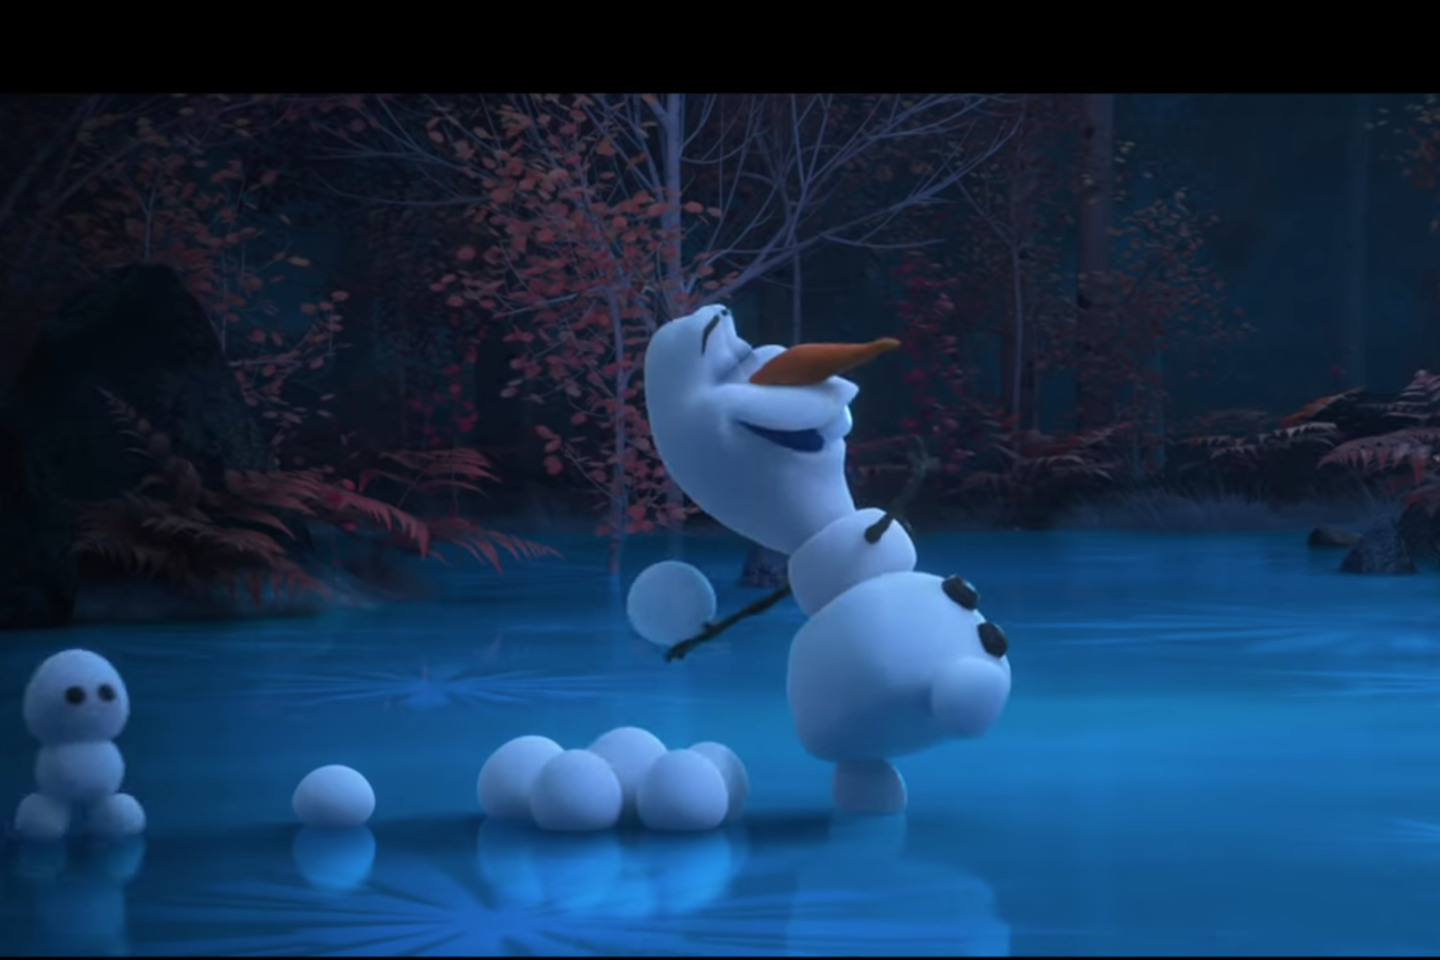  Pirmame epizode Olafas į mišką mėto sniego gniūžtes.<br> „Disney“ nuotr.